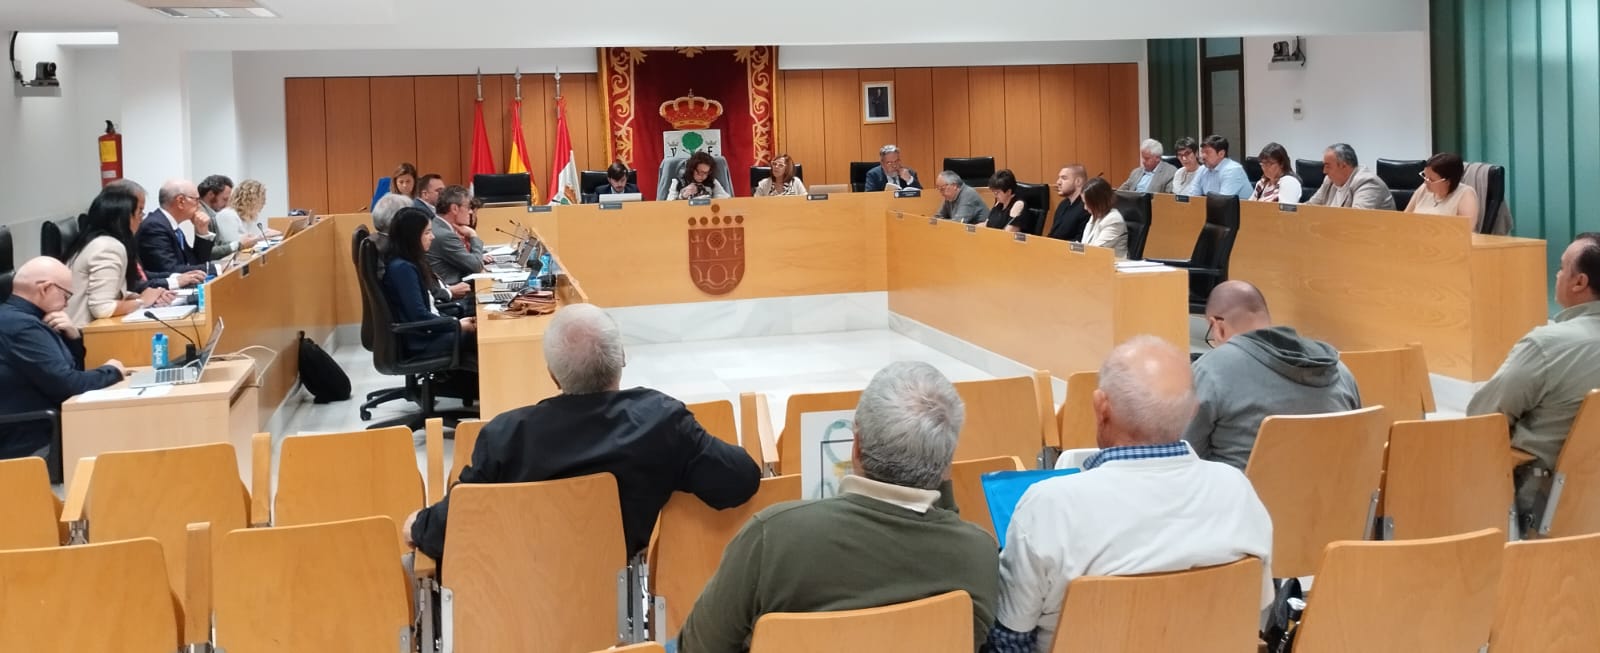 Acuerdos relevantes acordados en el Pleno de San Sebastián de los Reyes